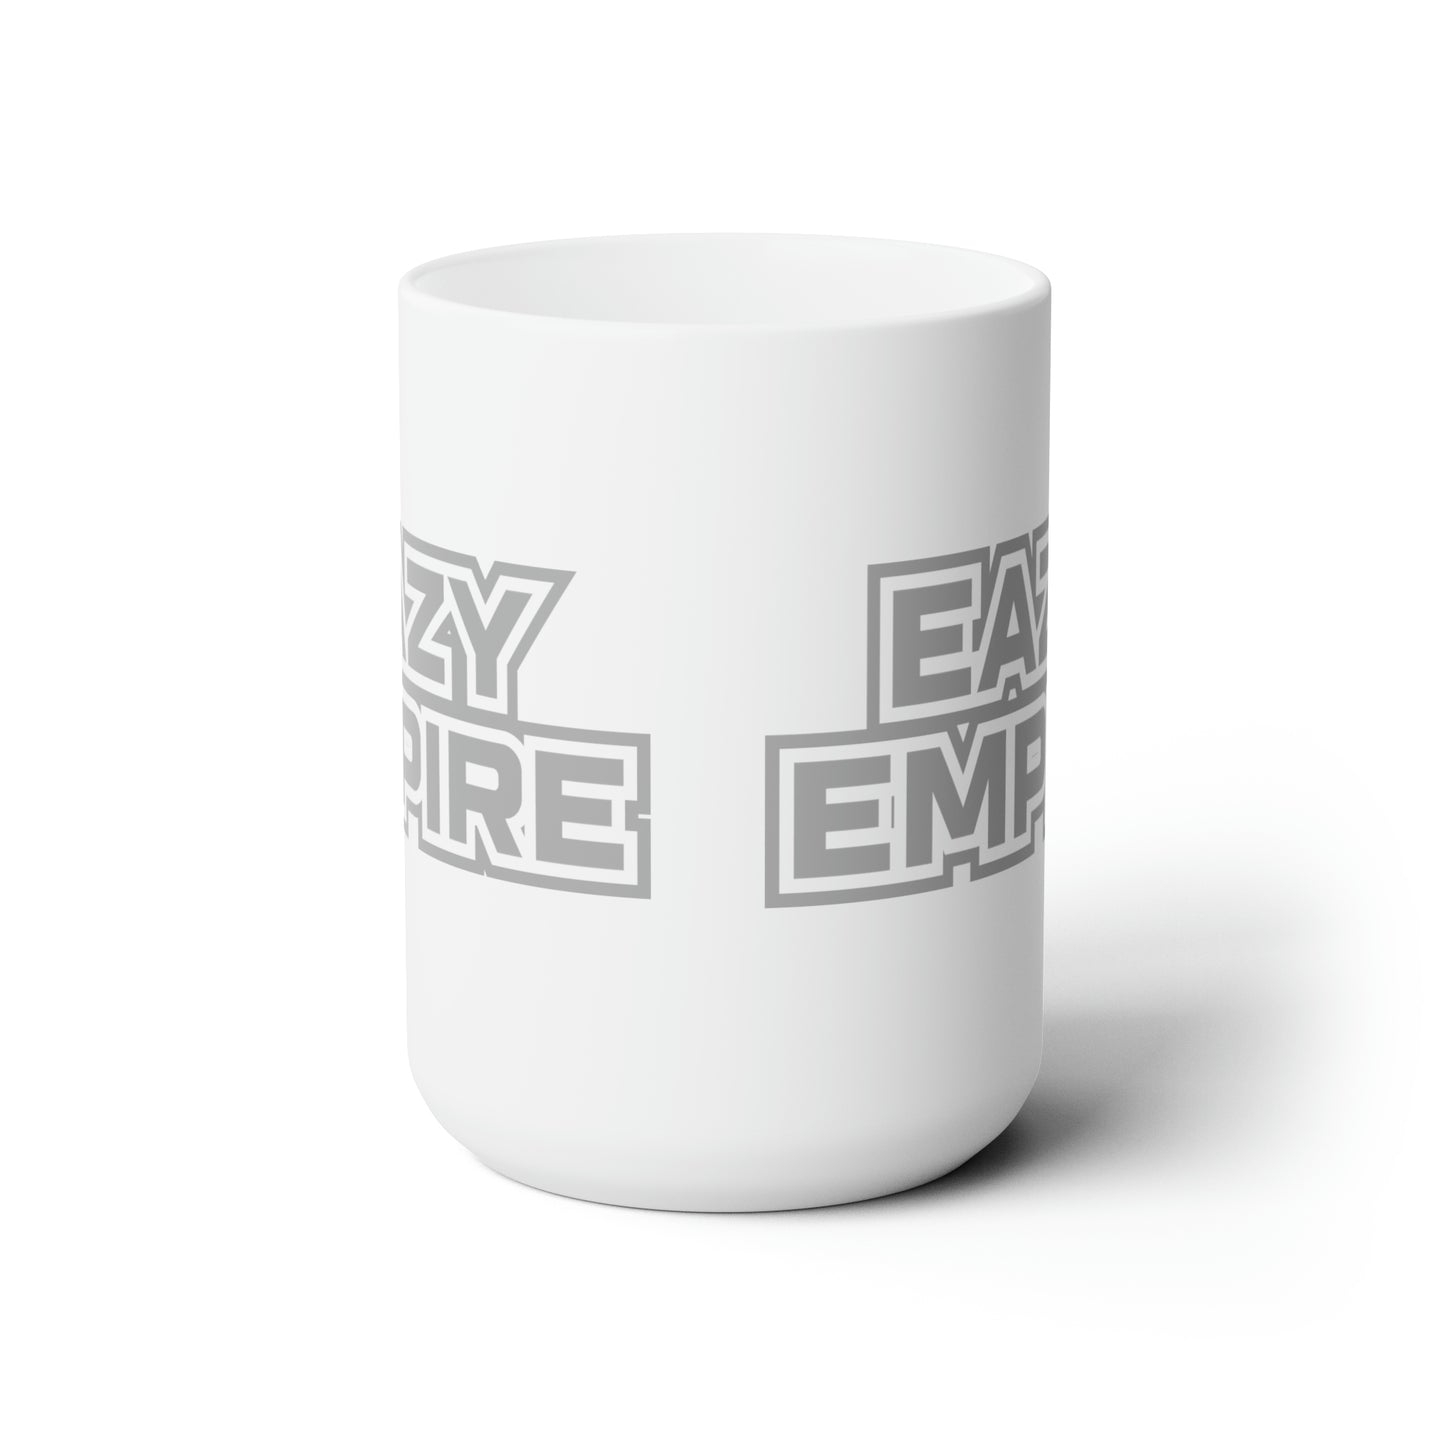 Eazy Empire Ceramic Mug 15oz